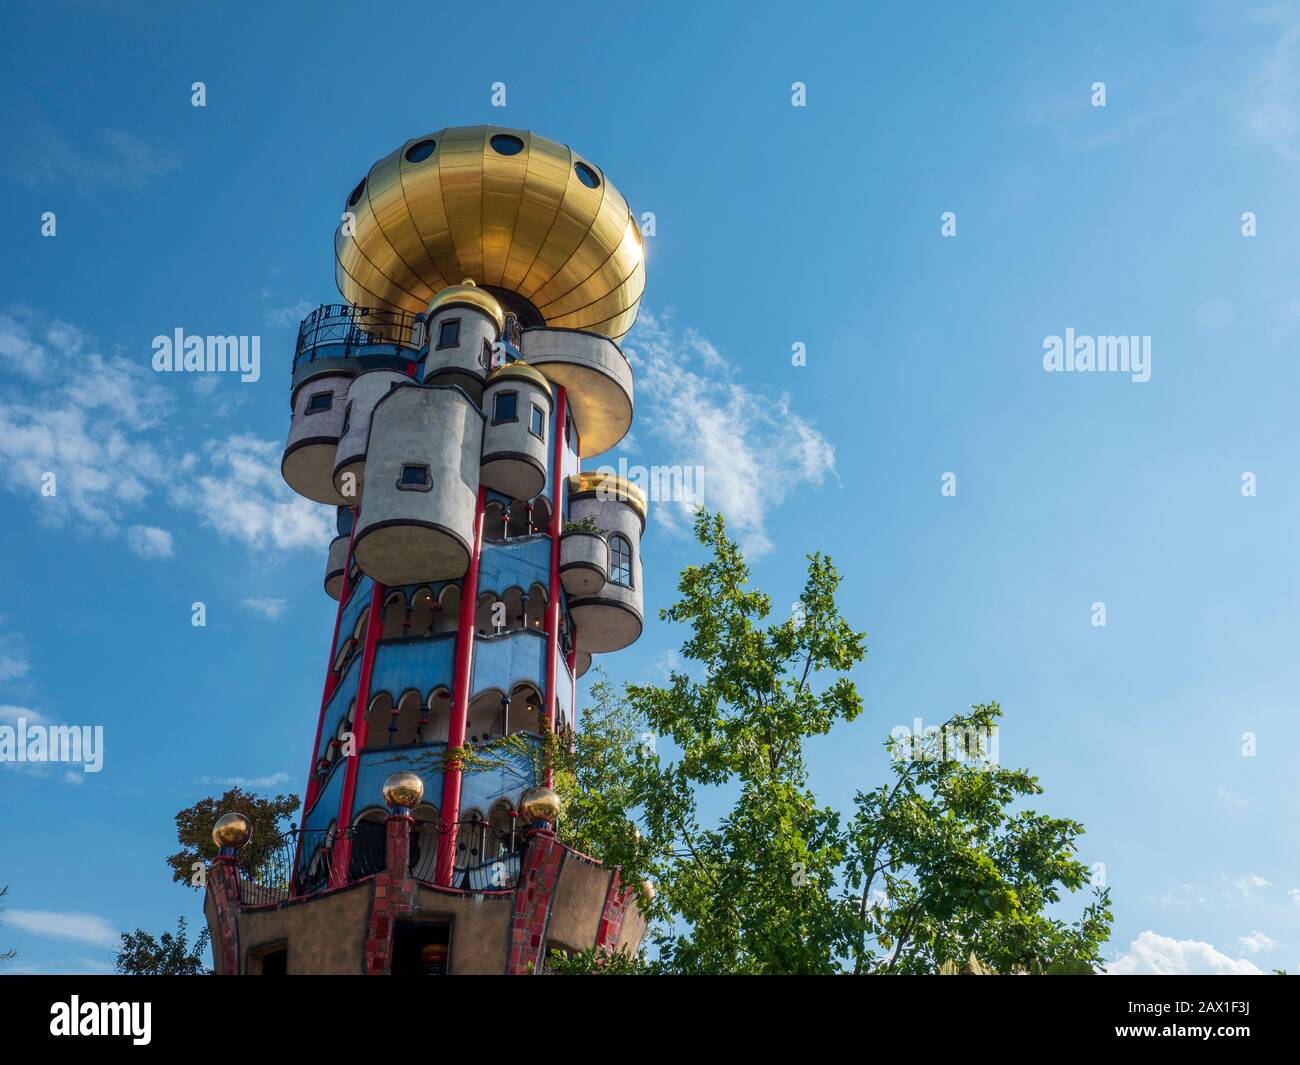 Hundertwasserturm Kuchlbauer, Abensberg, Bayern, Deutschland | Hundertwasser-Tower Kuchlbauer, Abensberg, Bavaria, Germany Stock Photo